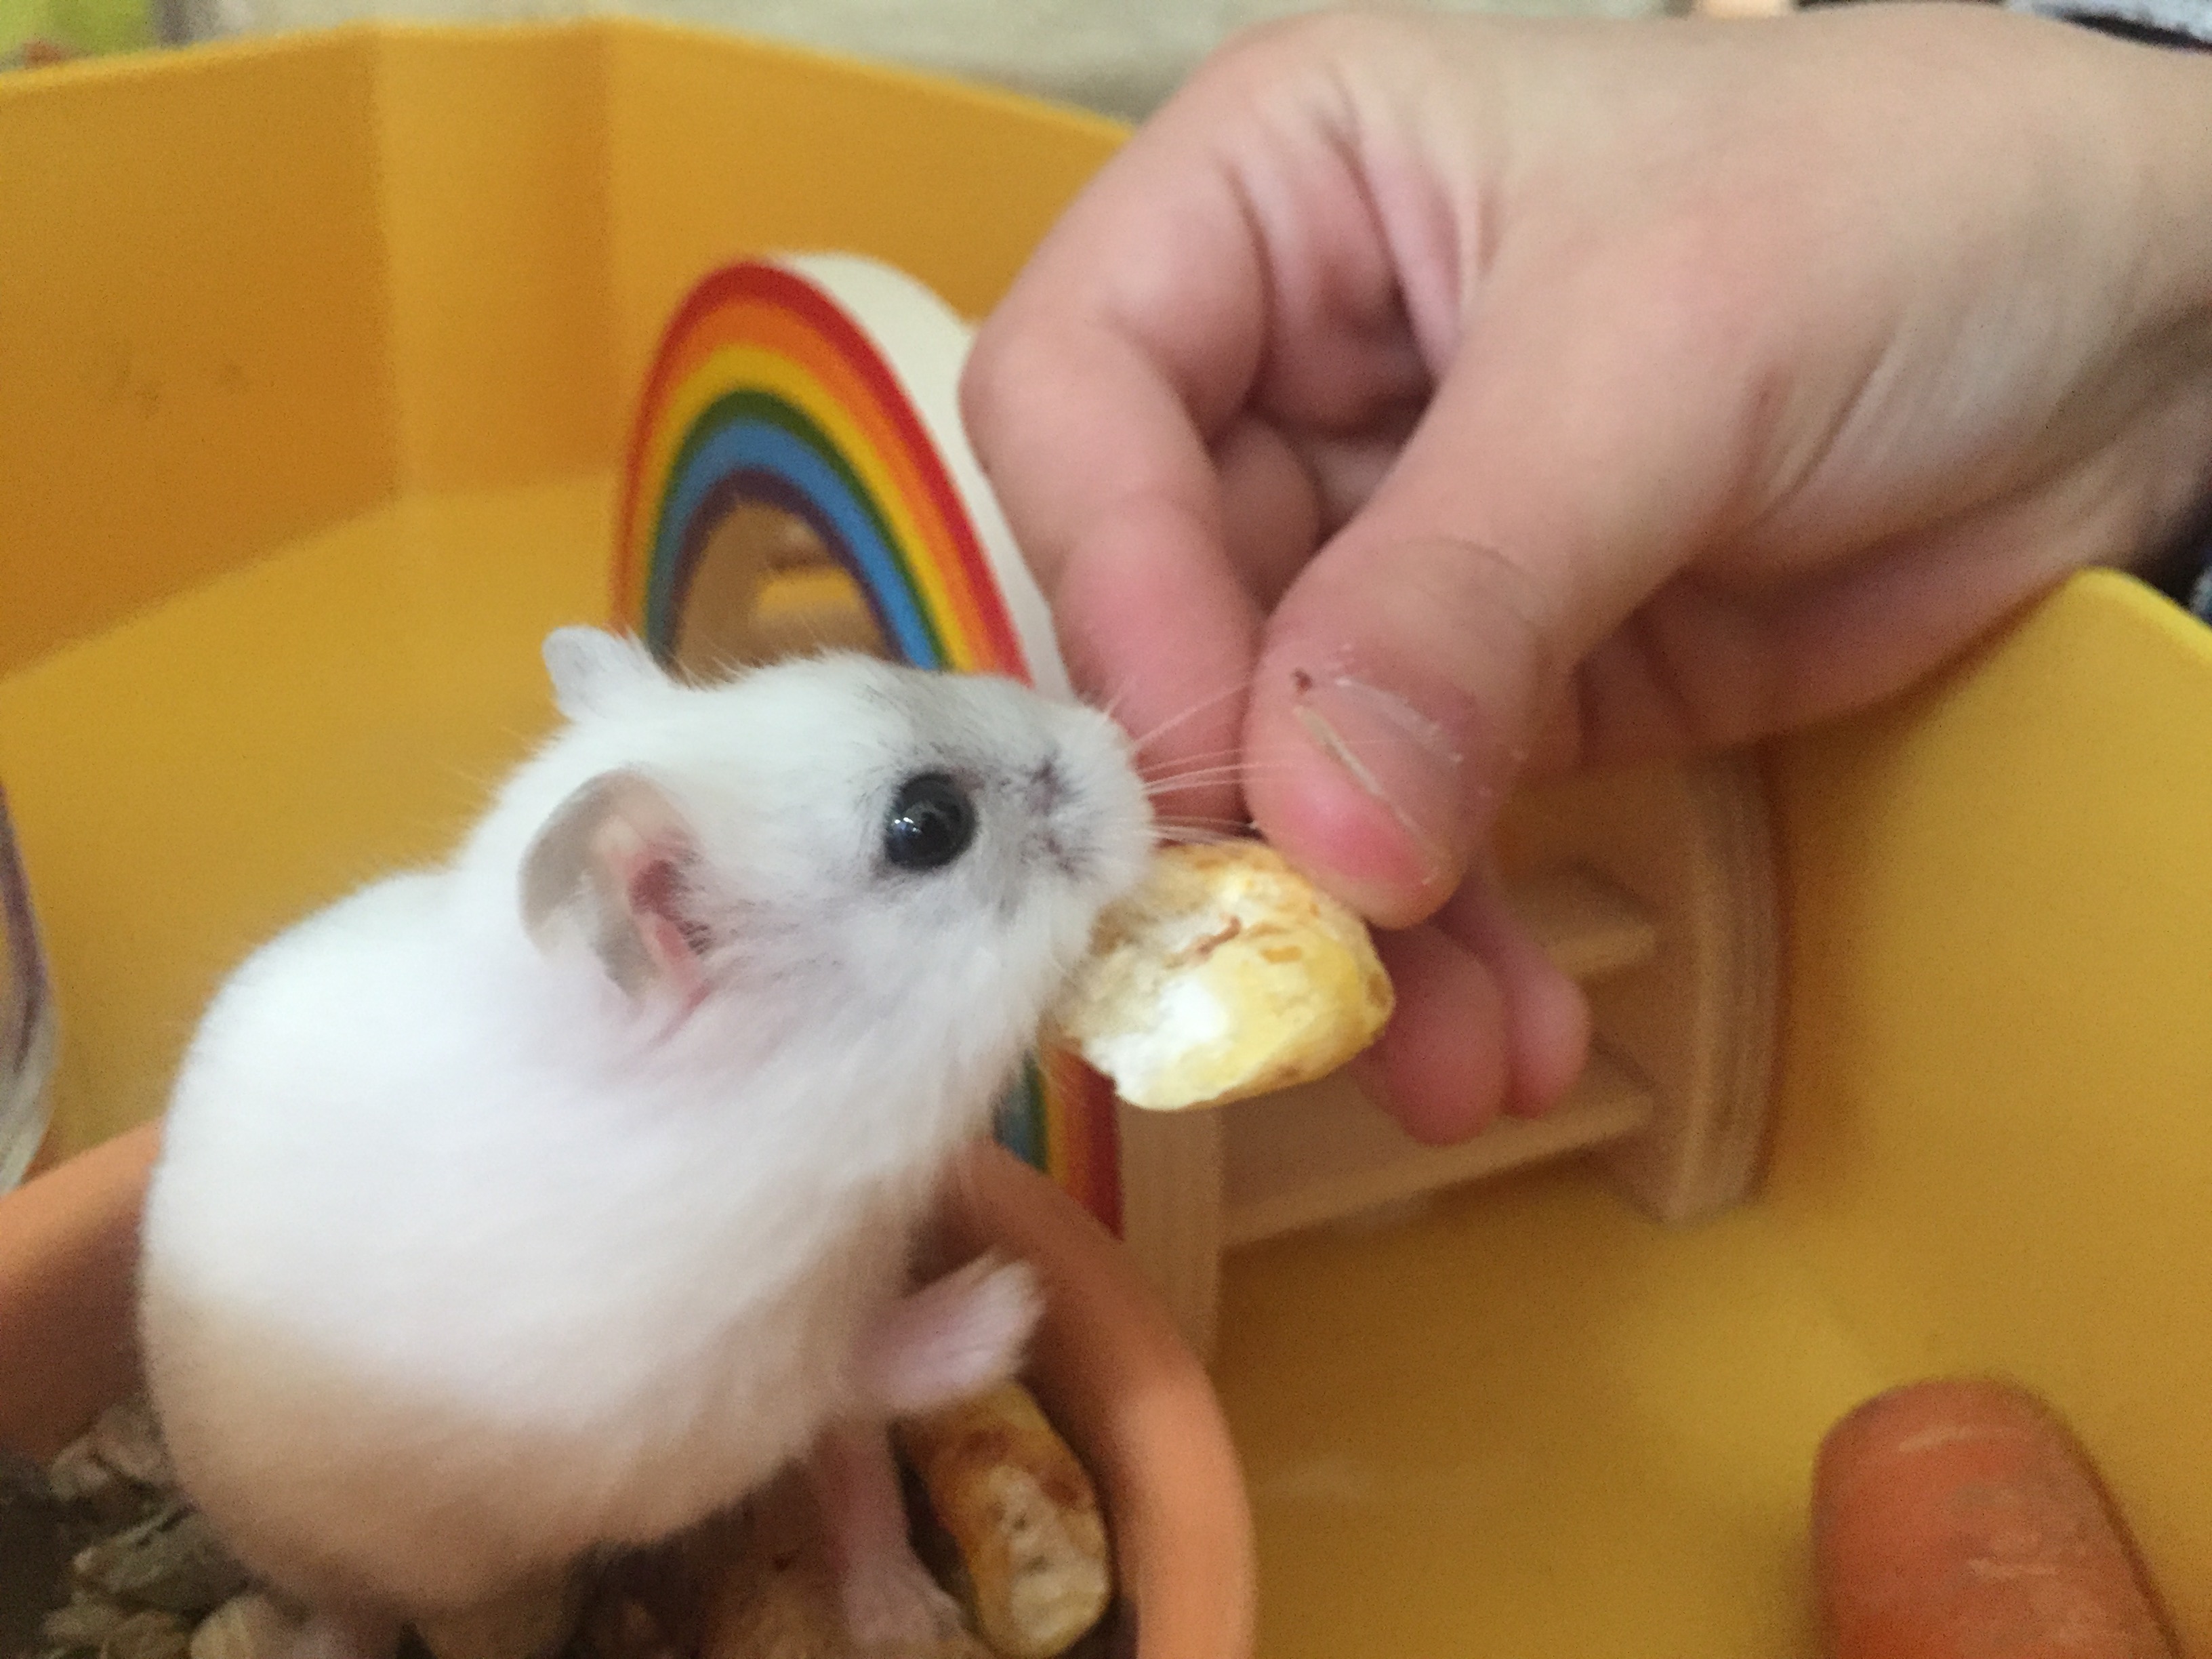 Un pequeño hámster enano blanco comiendo una Golosina de su dueño dentro de su jaula